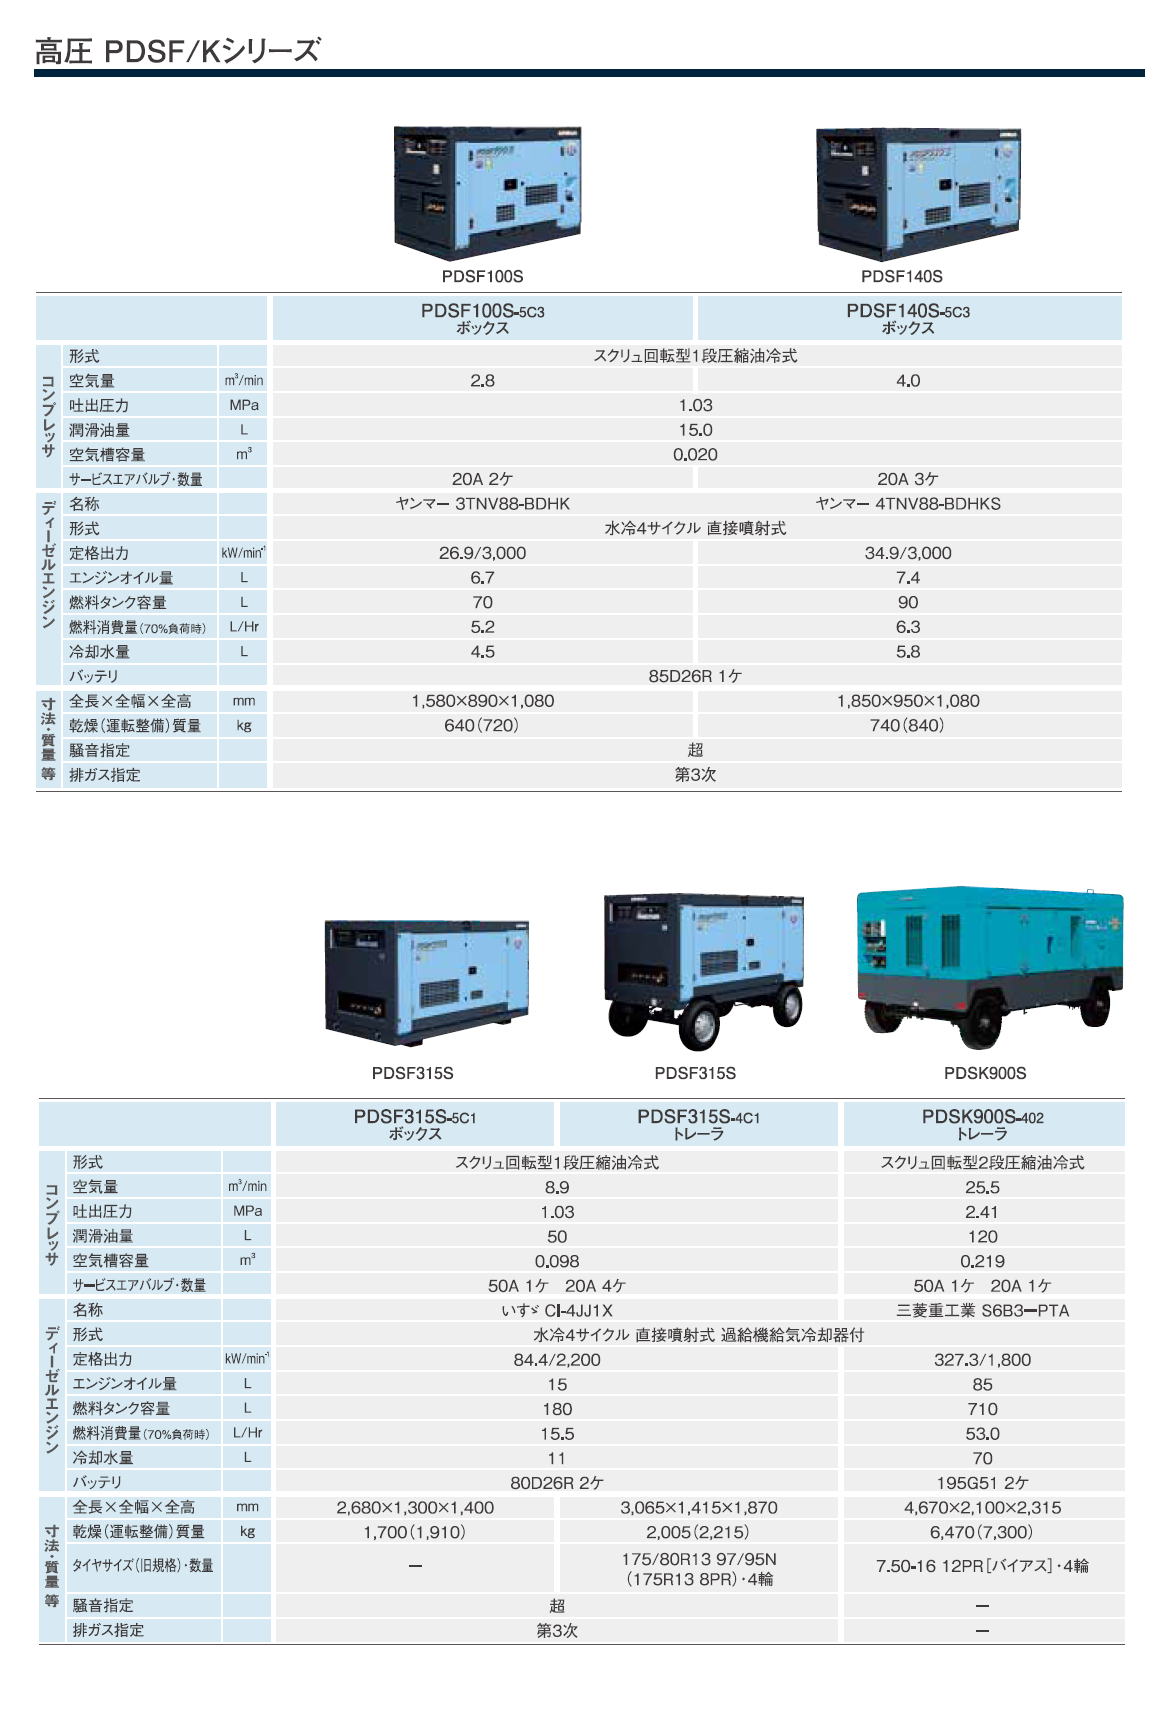 北越工業 AIRMAN エンジンコンプレッサ PDSシリーズ(PDS/PDSF/PDS-VR